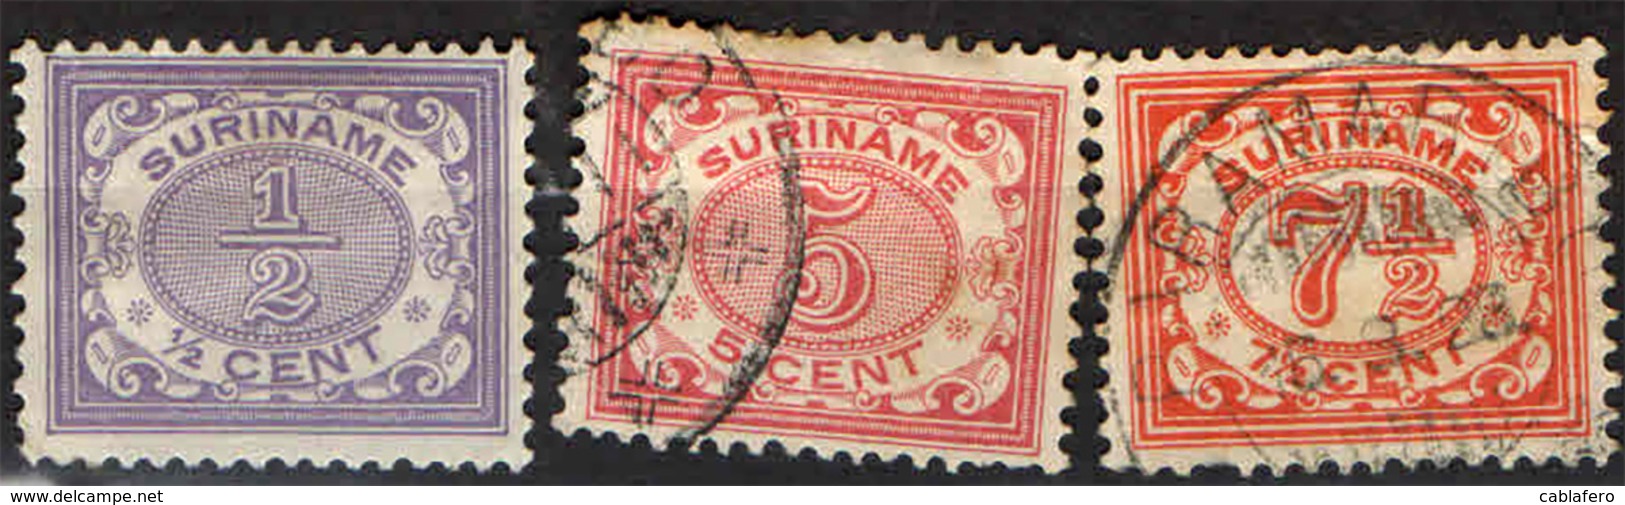 SURINAME - 1913 - CIFRE - NUMERALS - USATI - Suriname